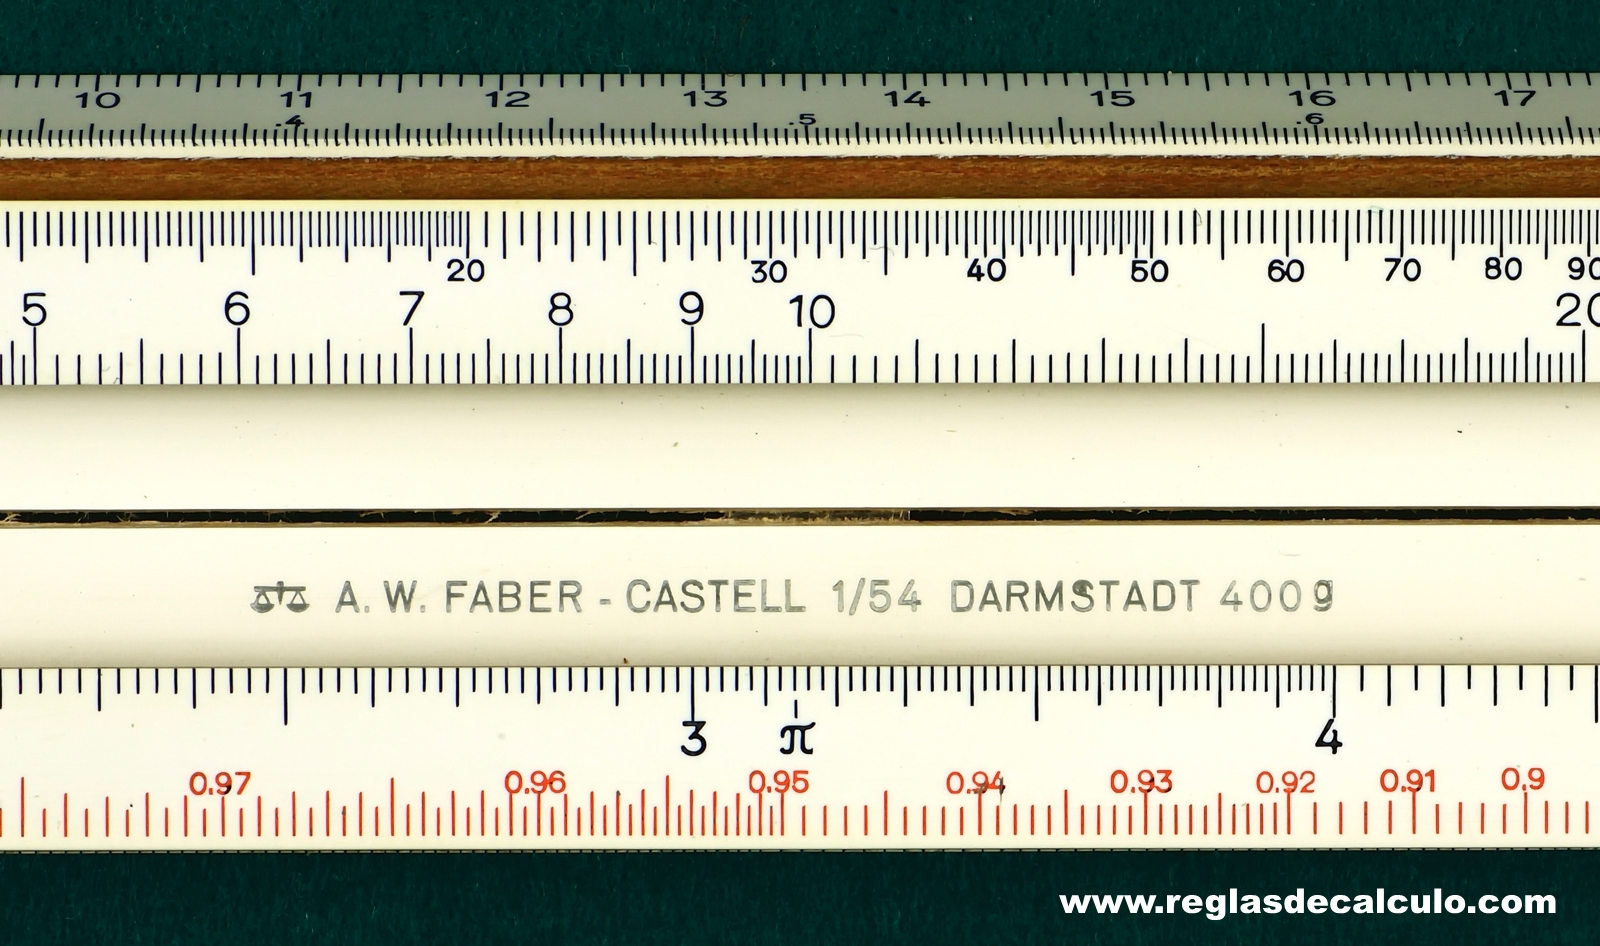 Regla de Calculo Slide rule Faber Castell 1/54 400g